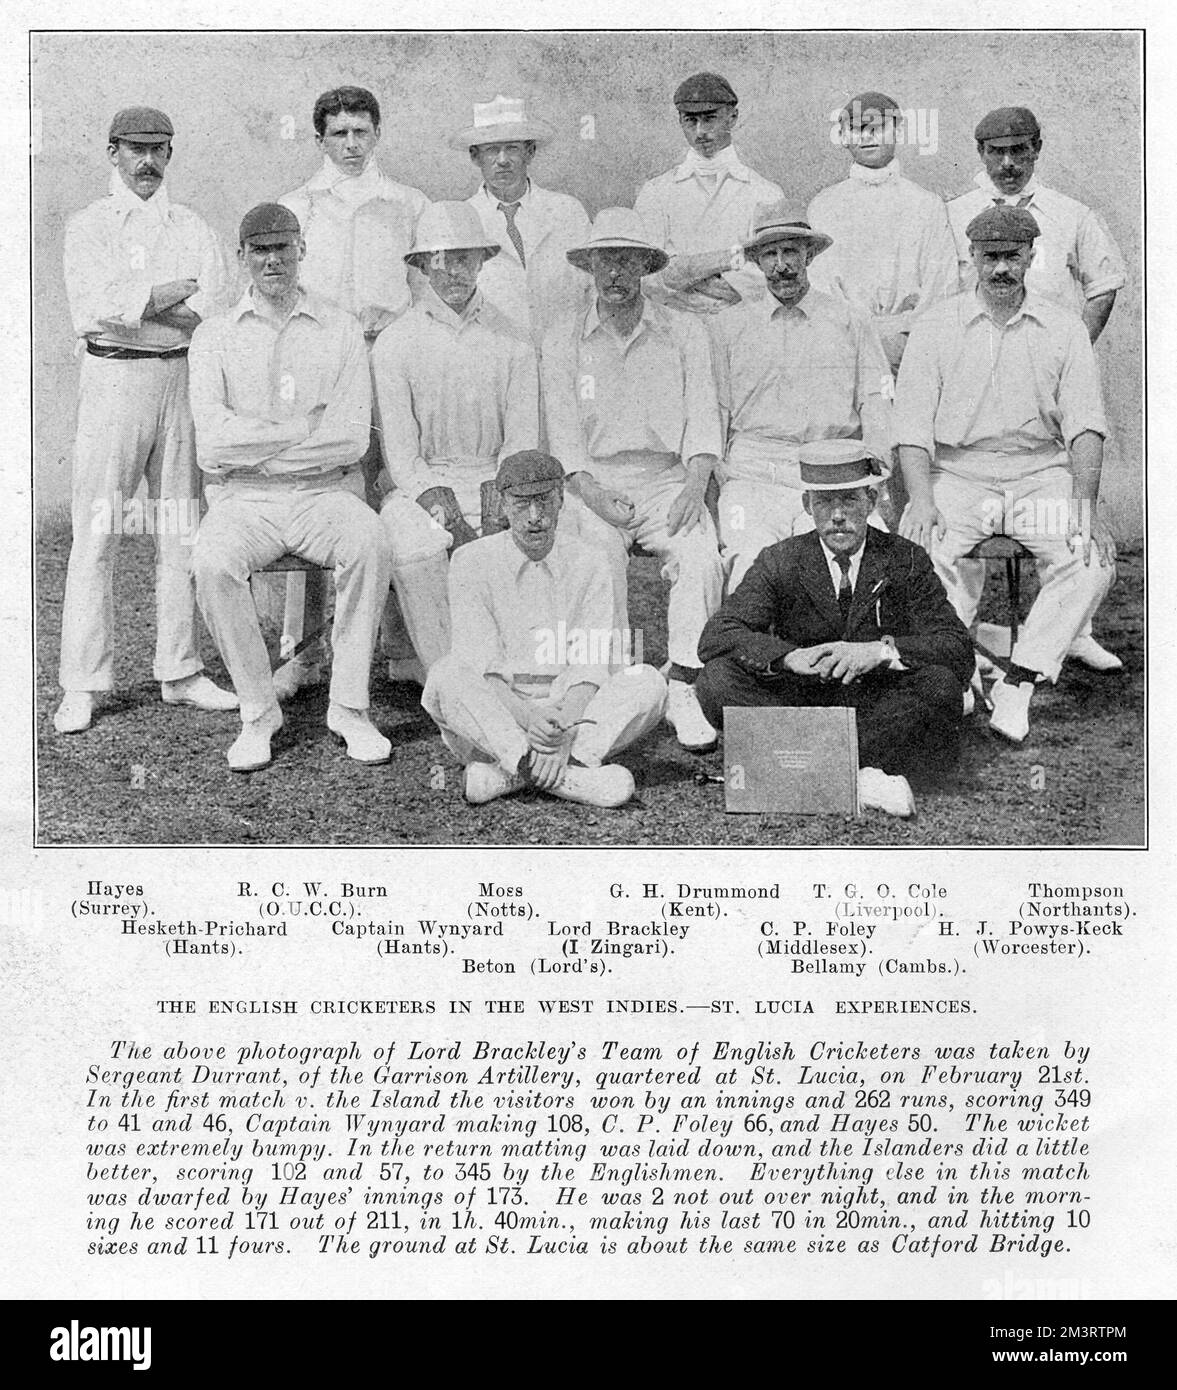 L'équipe de joueurs de cricket anglais de Lord Brackley dans les Antilles. Date: 1905 Banque D'Images